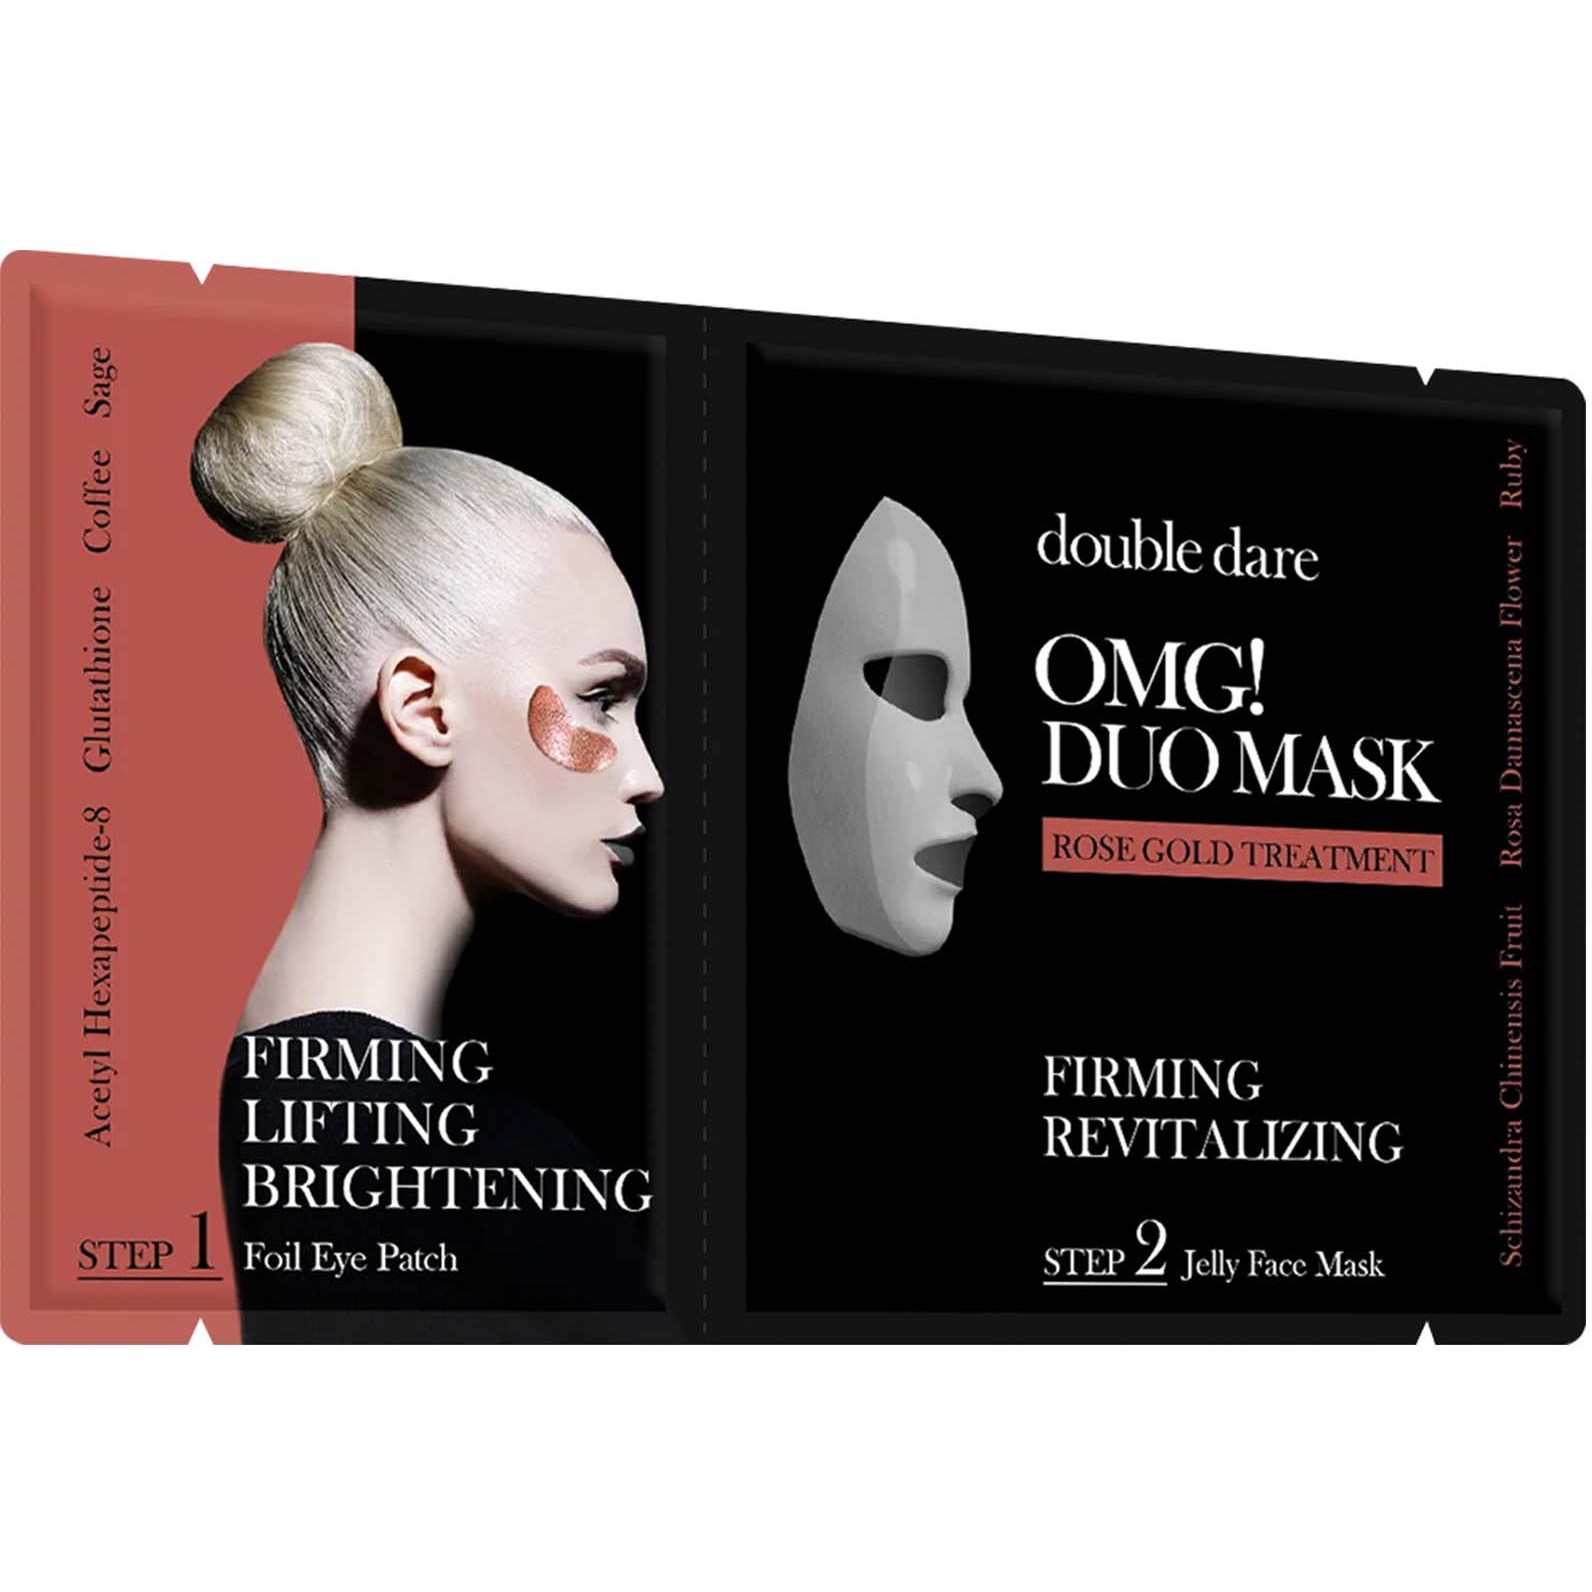 Bilde av Omg! Double Dare Duo Mask Rose Gold Treatment